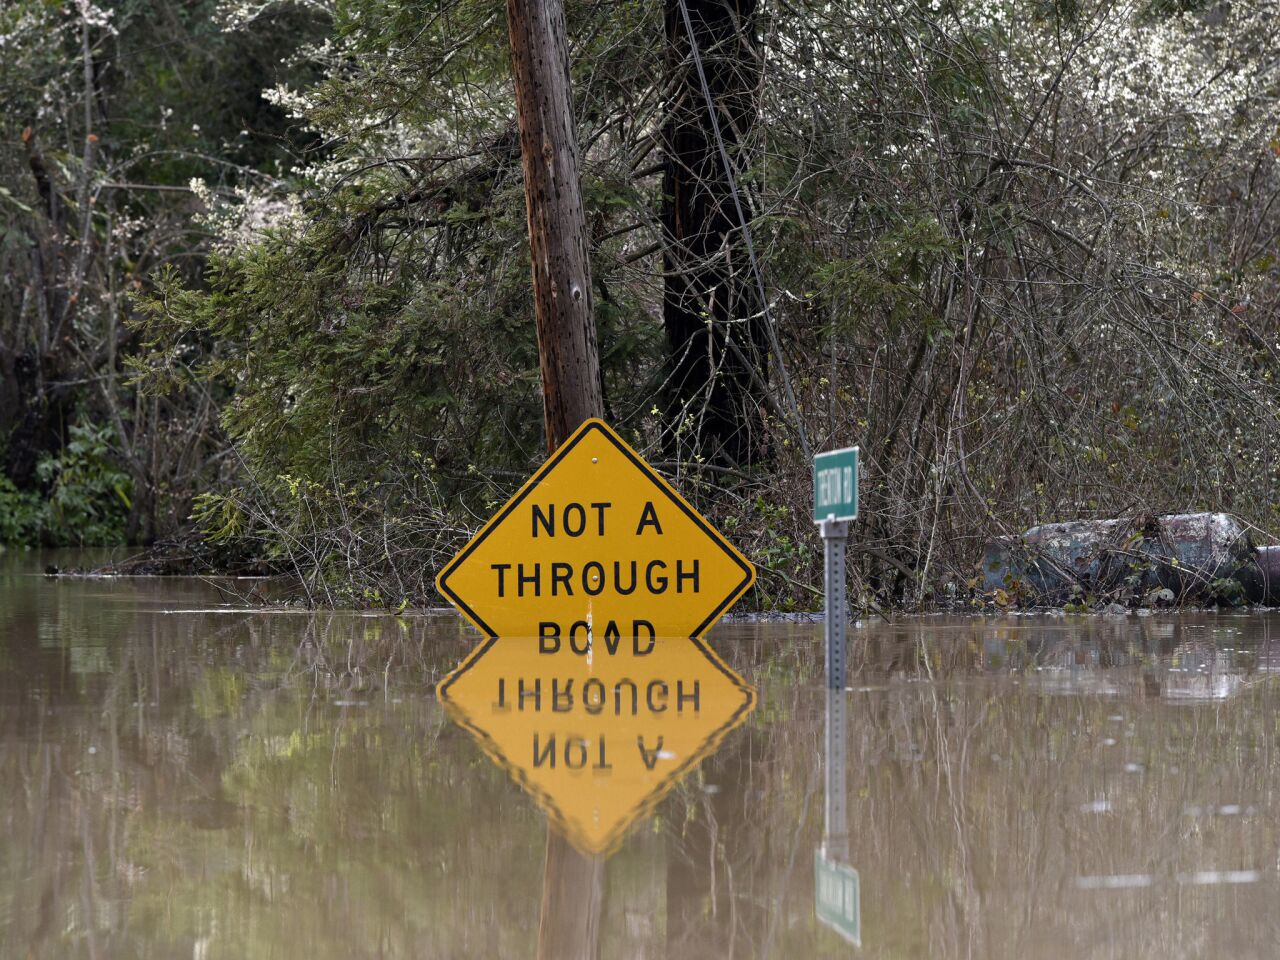 Inundaciones en el norte de California